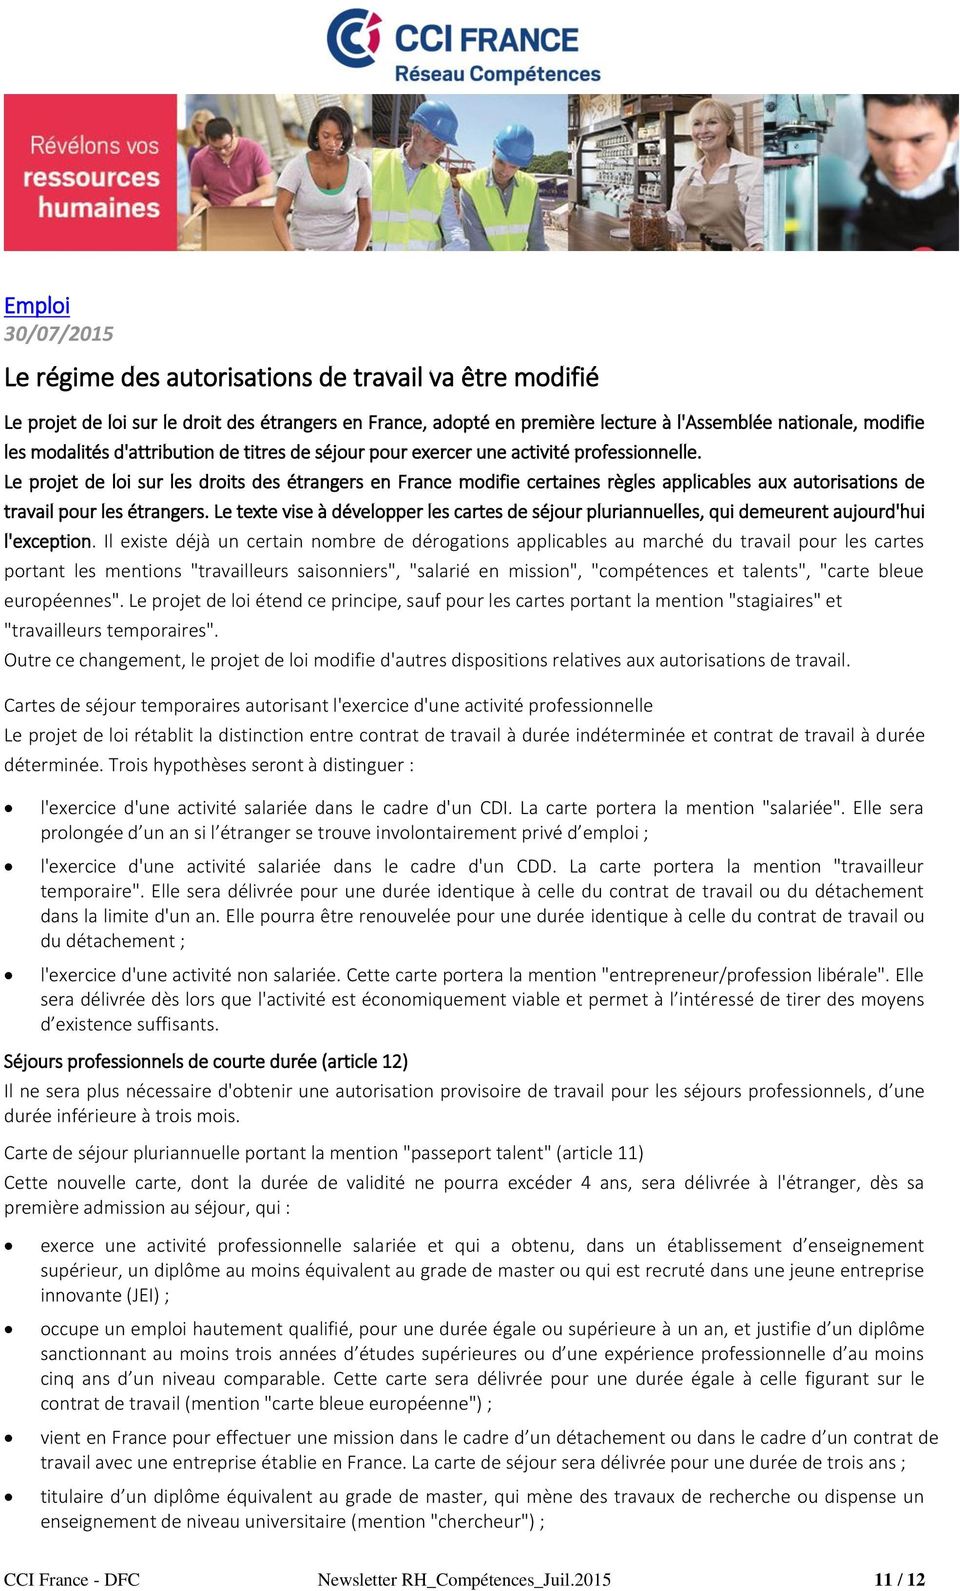 Le projet de loi sur les droits des étrangers en France modifie certaines règles applicables aux autorisations de travail pour les étrangers.